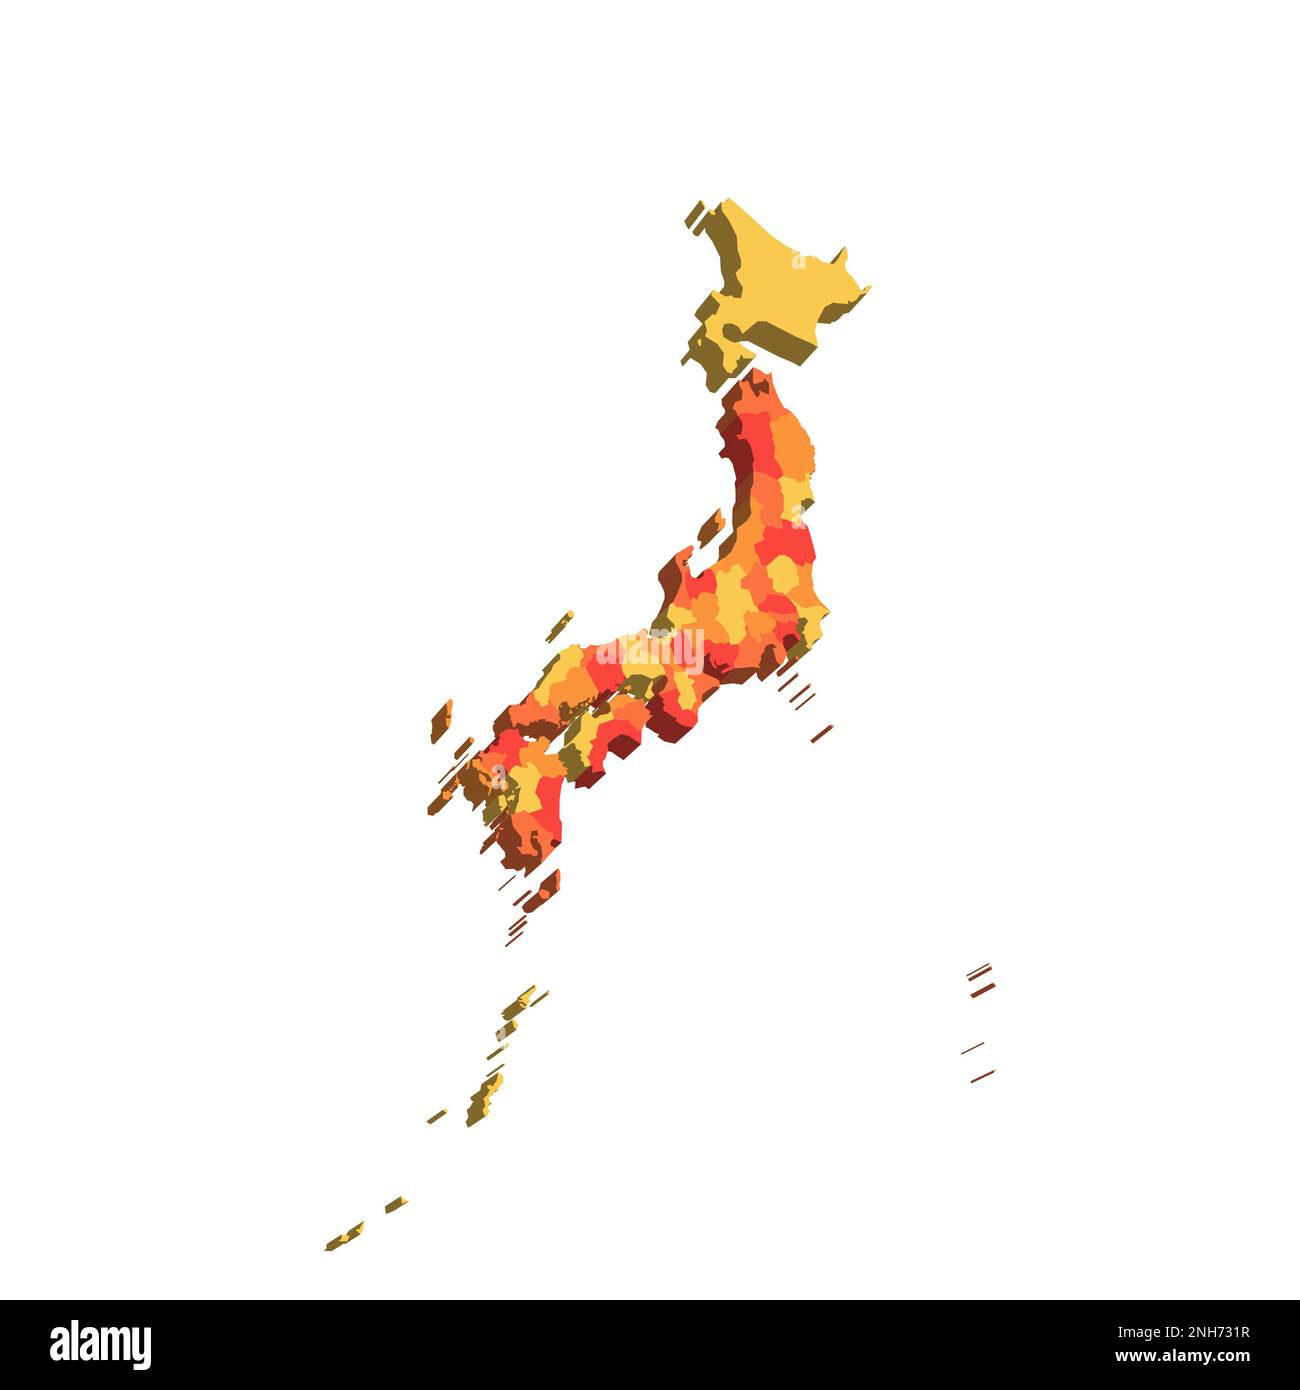 Politische Karte der Verwaltungseinheiten Japans - Präfekturen, Metropilis Tokio, Territorium Hokaido und städtische Präfekturen Kyoto und Osaka. 3D-Karte in orangefarbenen Farbtönen. Stock Vektor